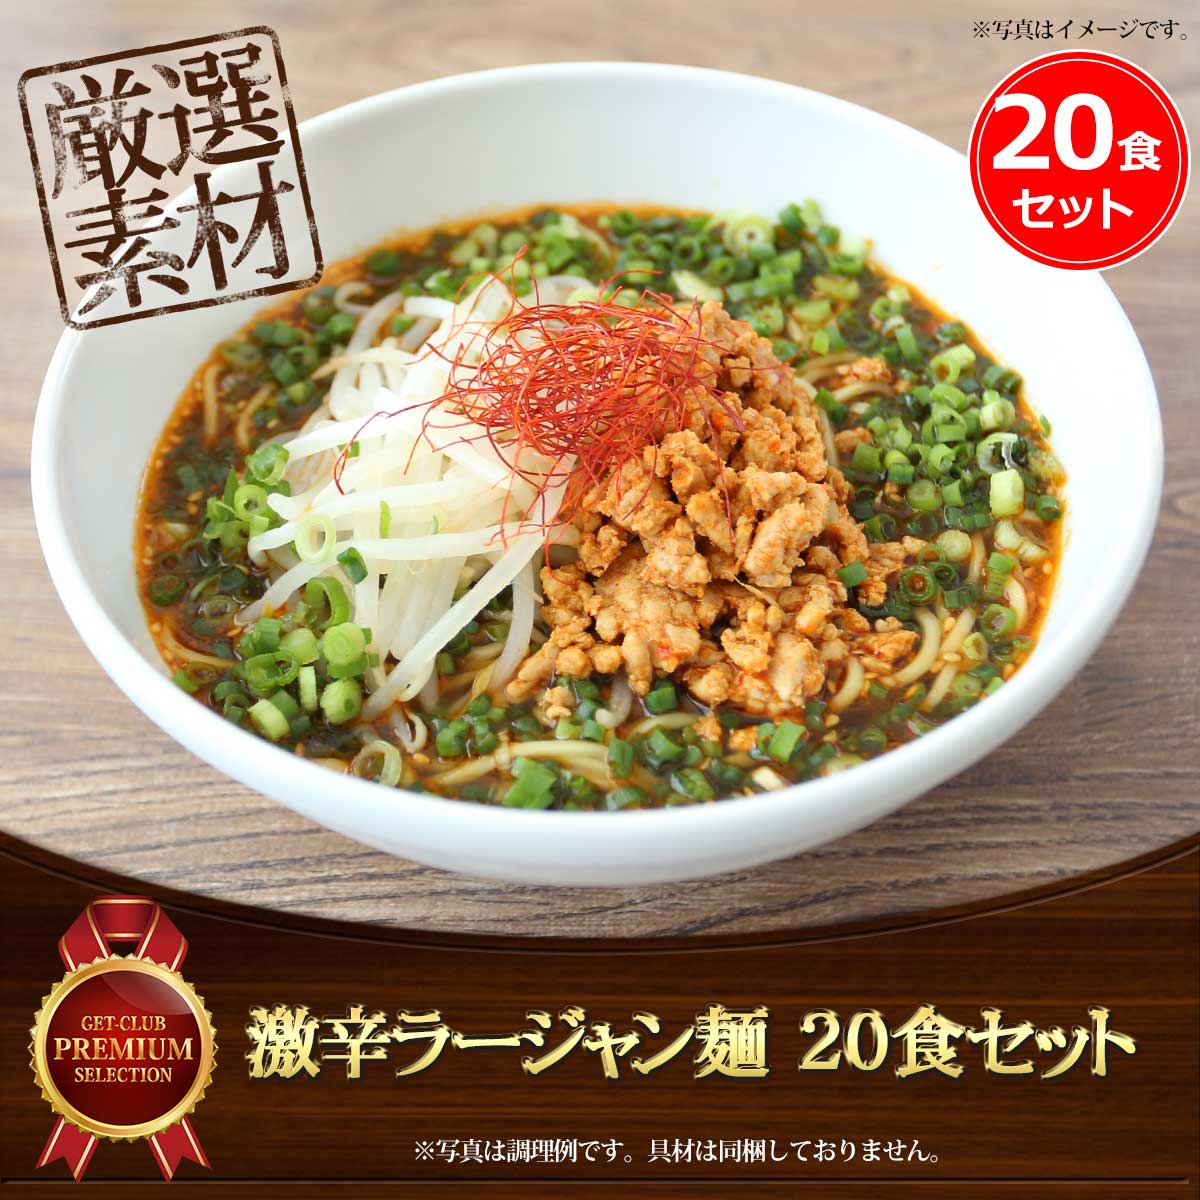 激辛ラージャン麺（20食セット）老舗製麺所の中太ストレート麺使用